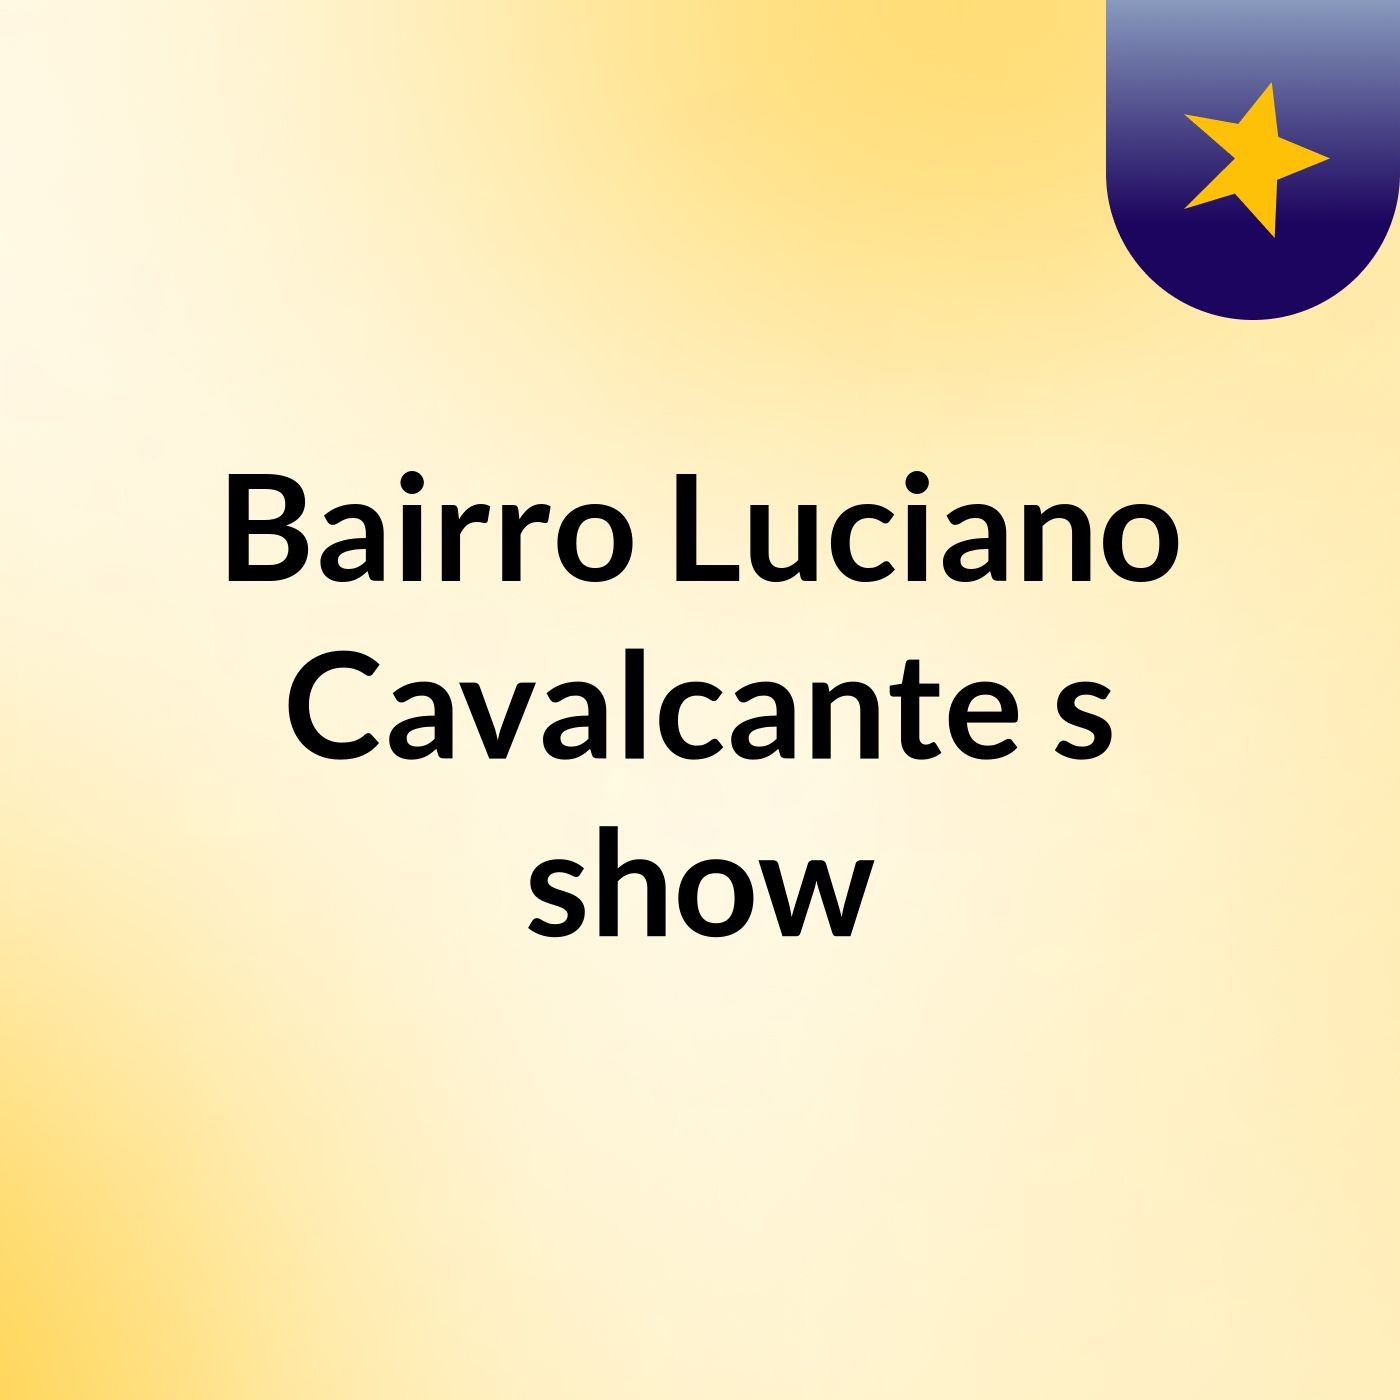 Bairro Luciano Cavalcante's show